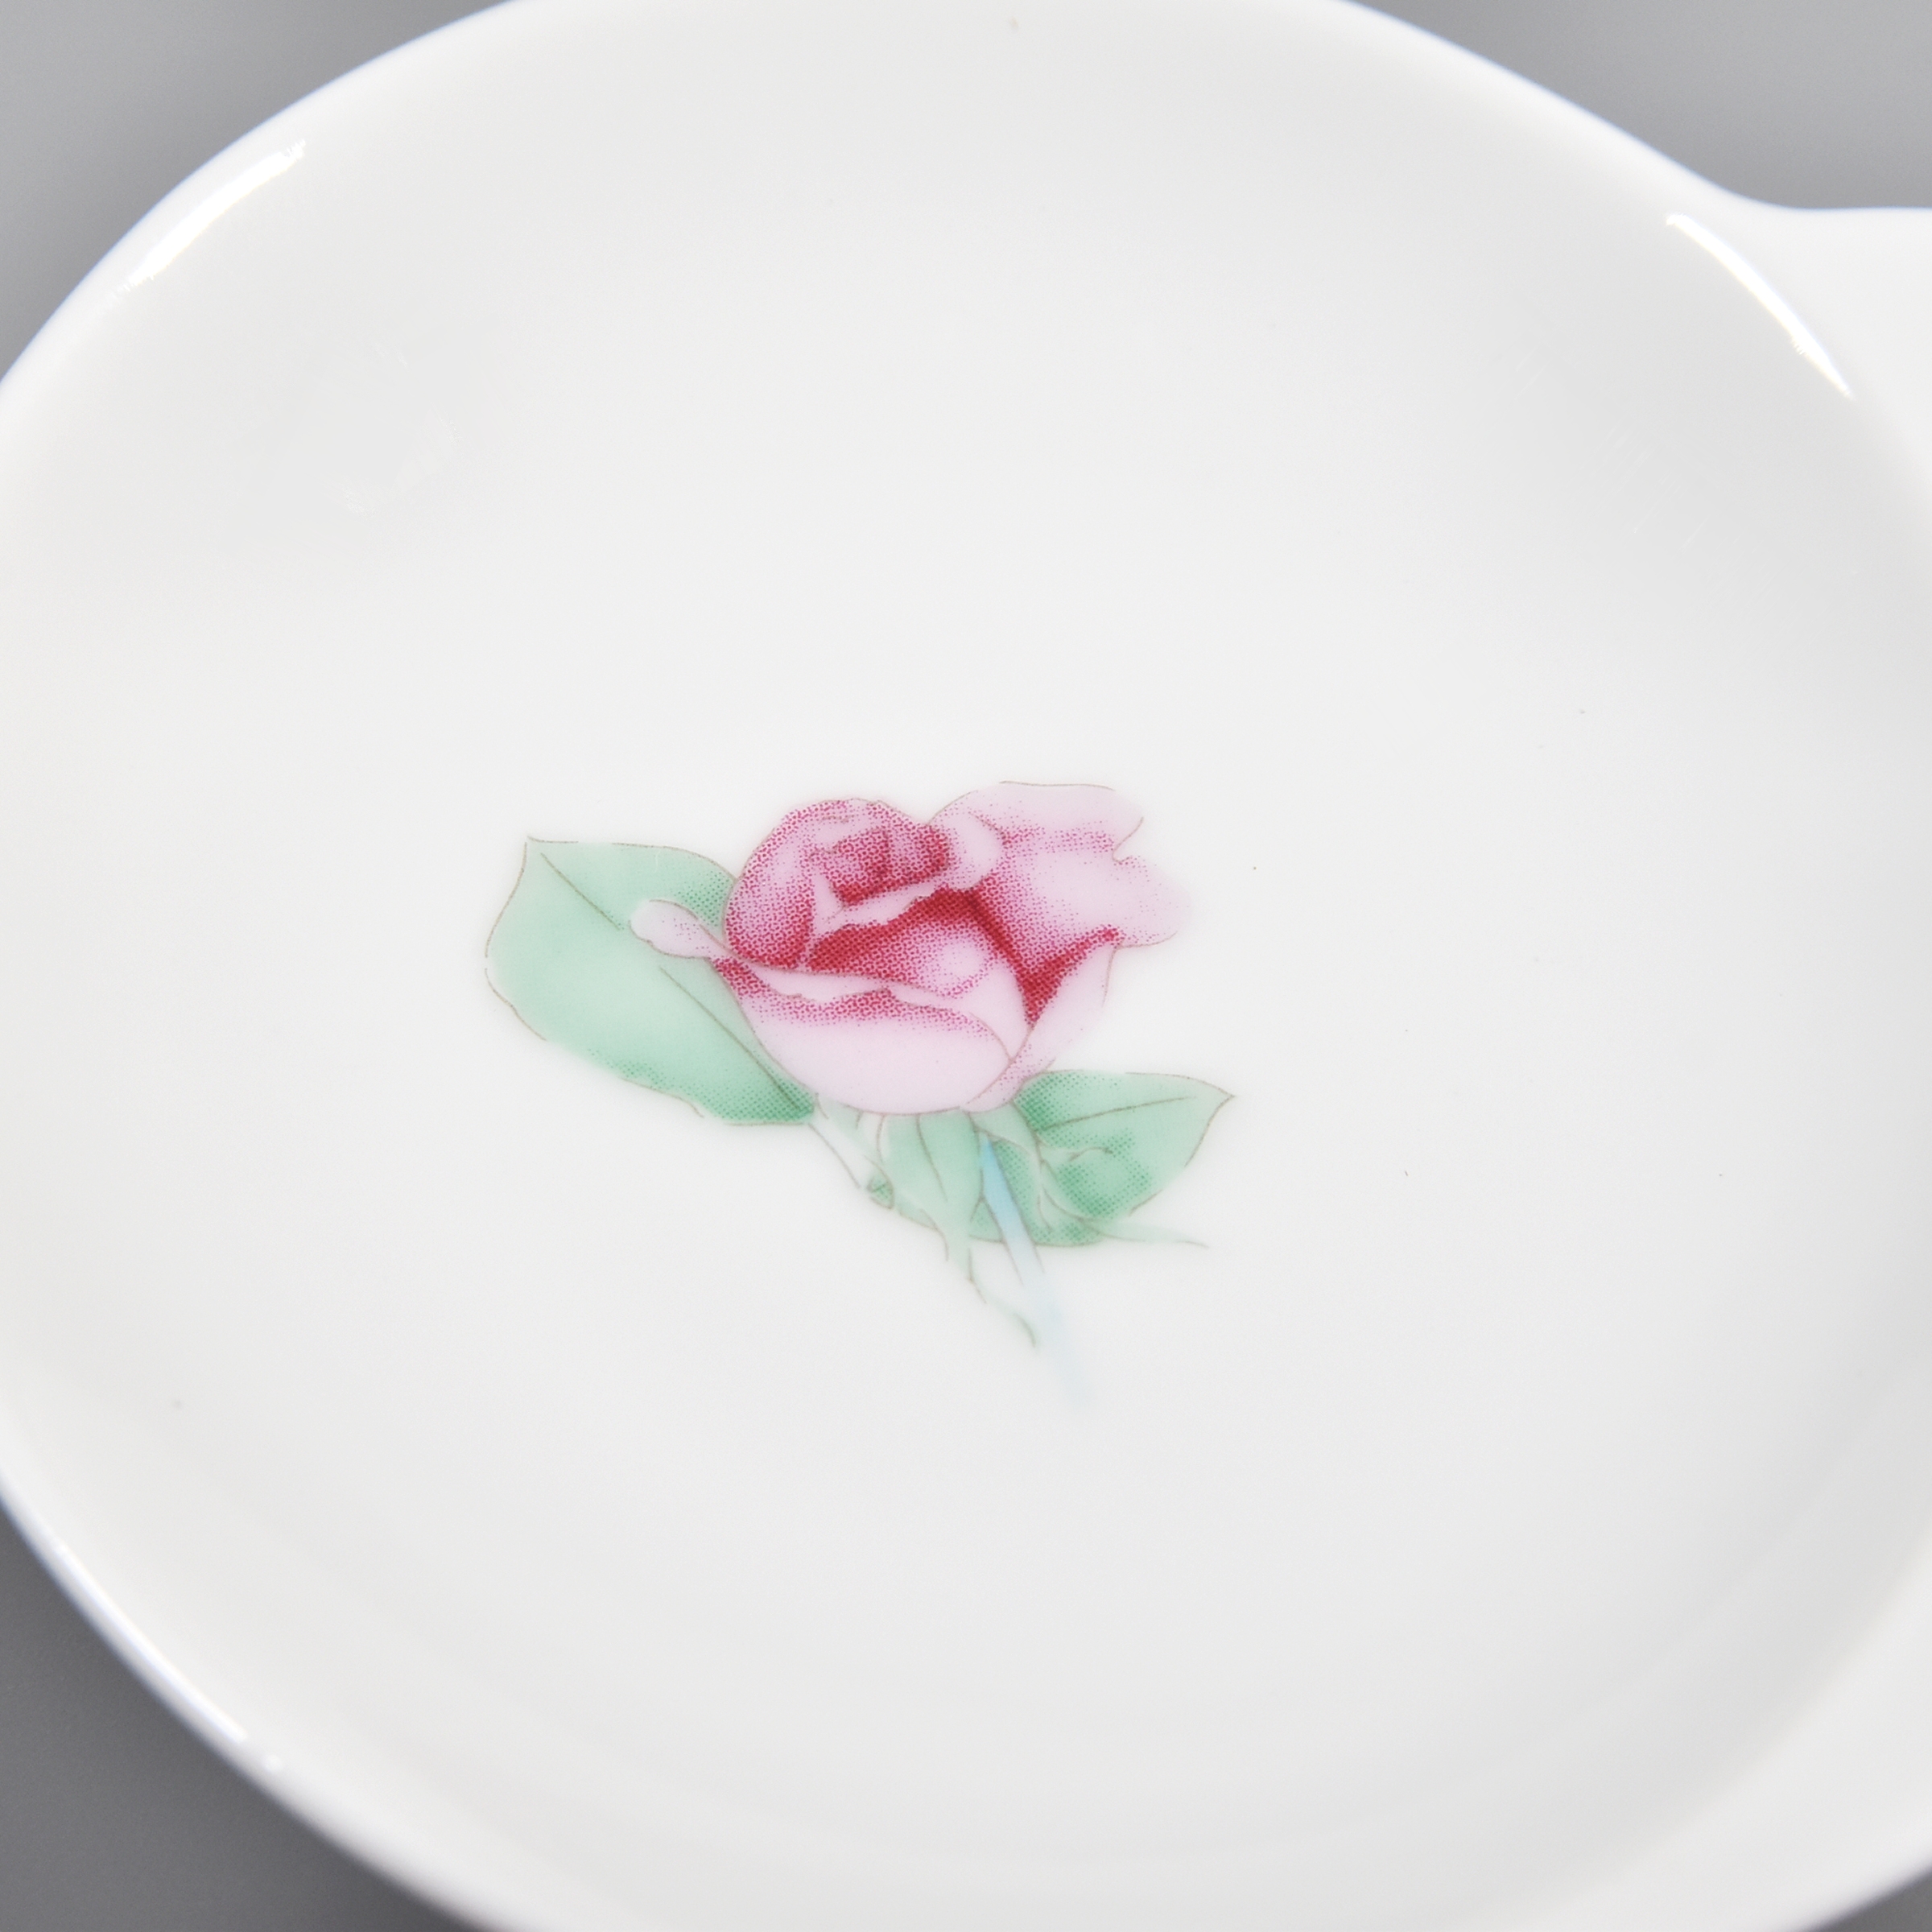 お皿の中央にはバラのデザインです。花弁はピンクのグラデーションになっています。